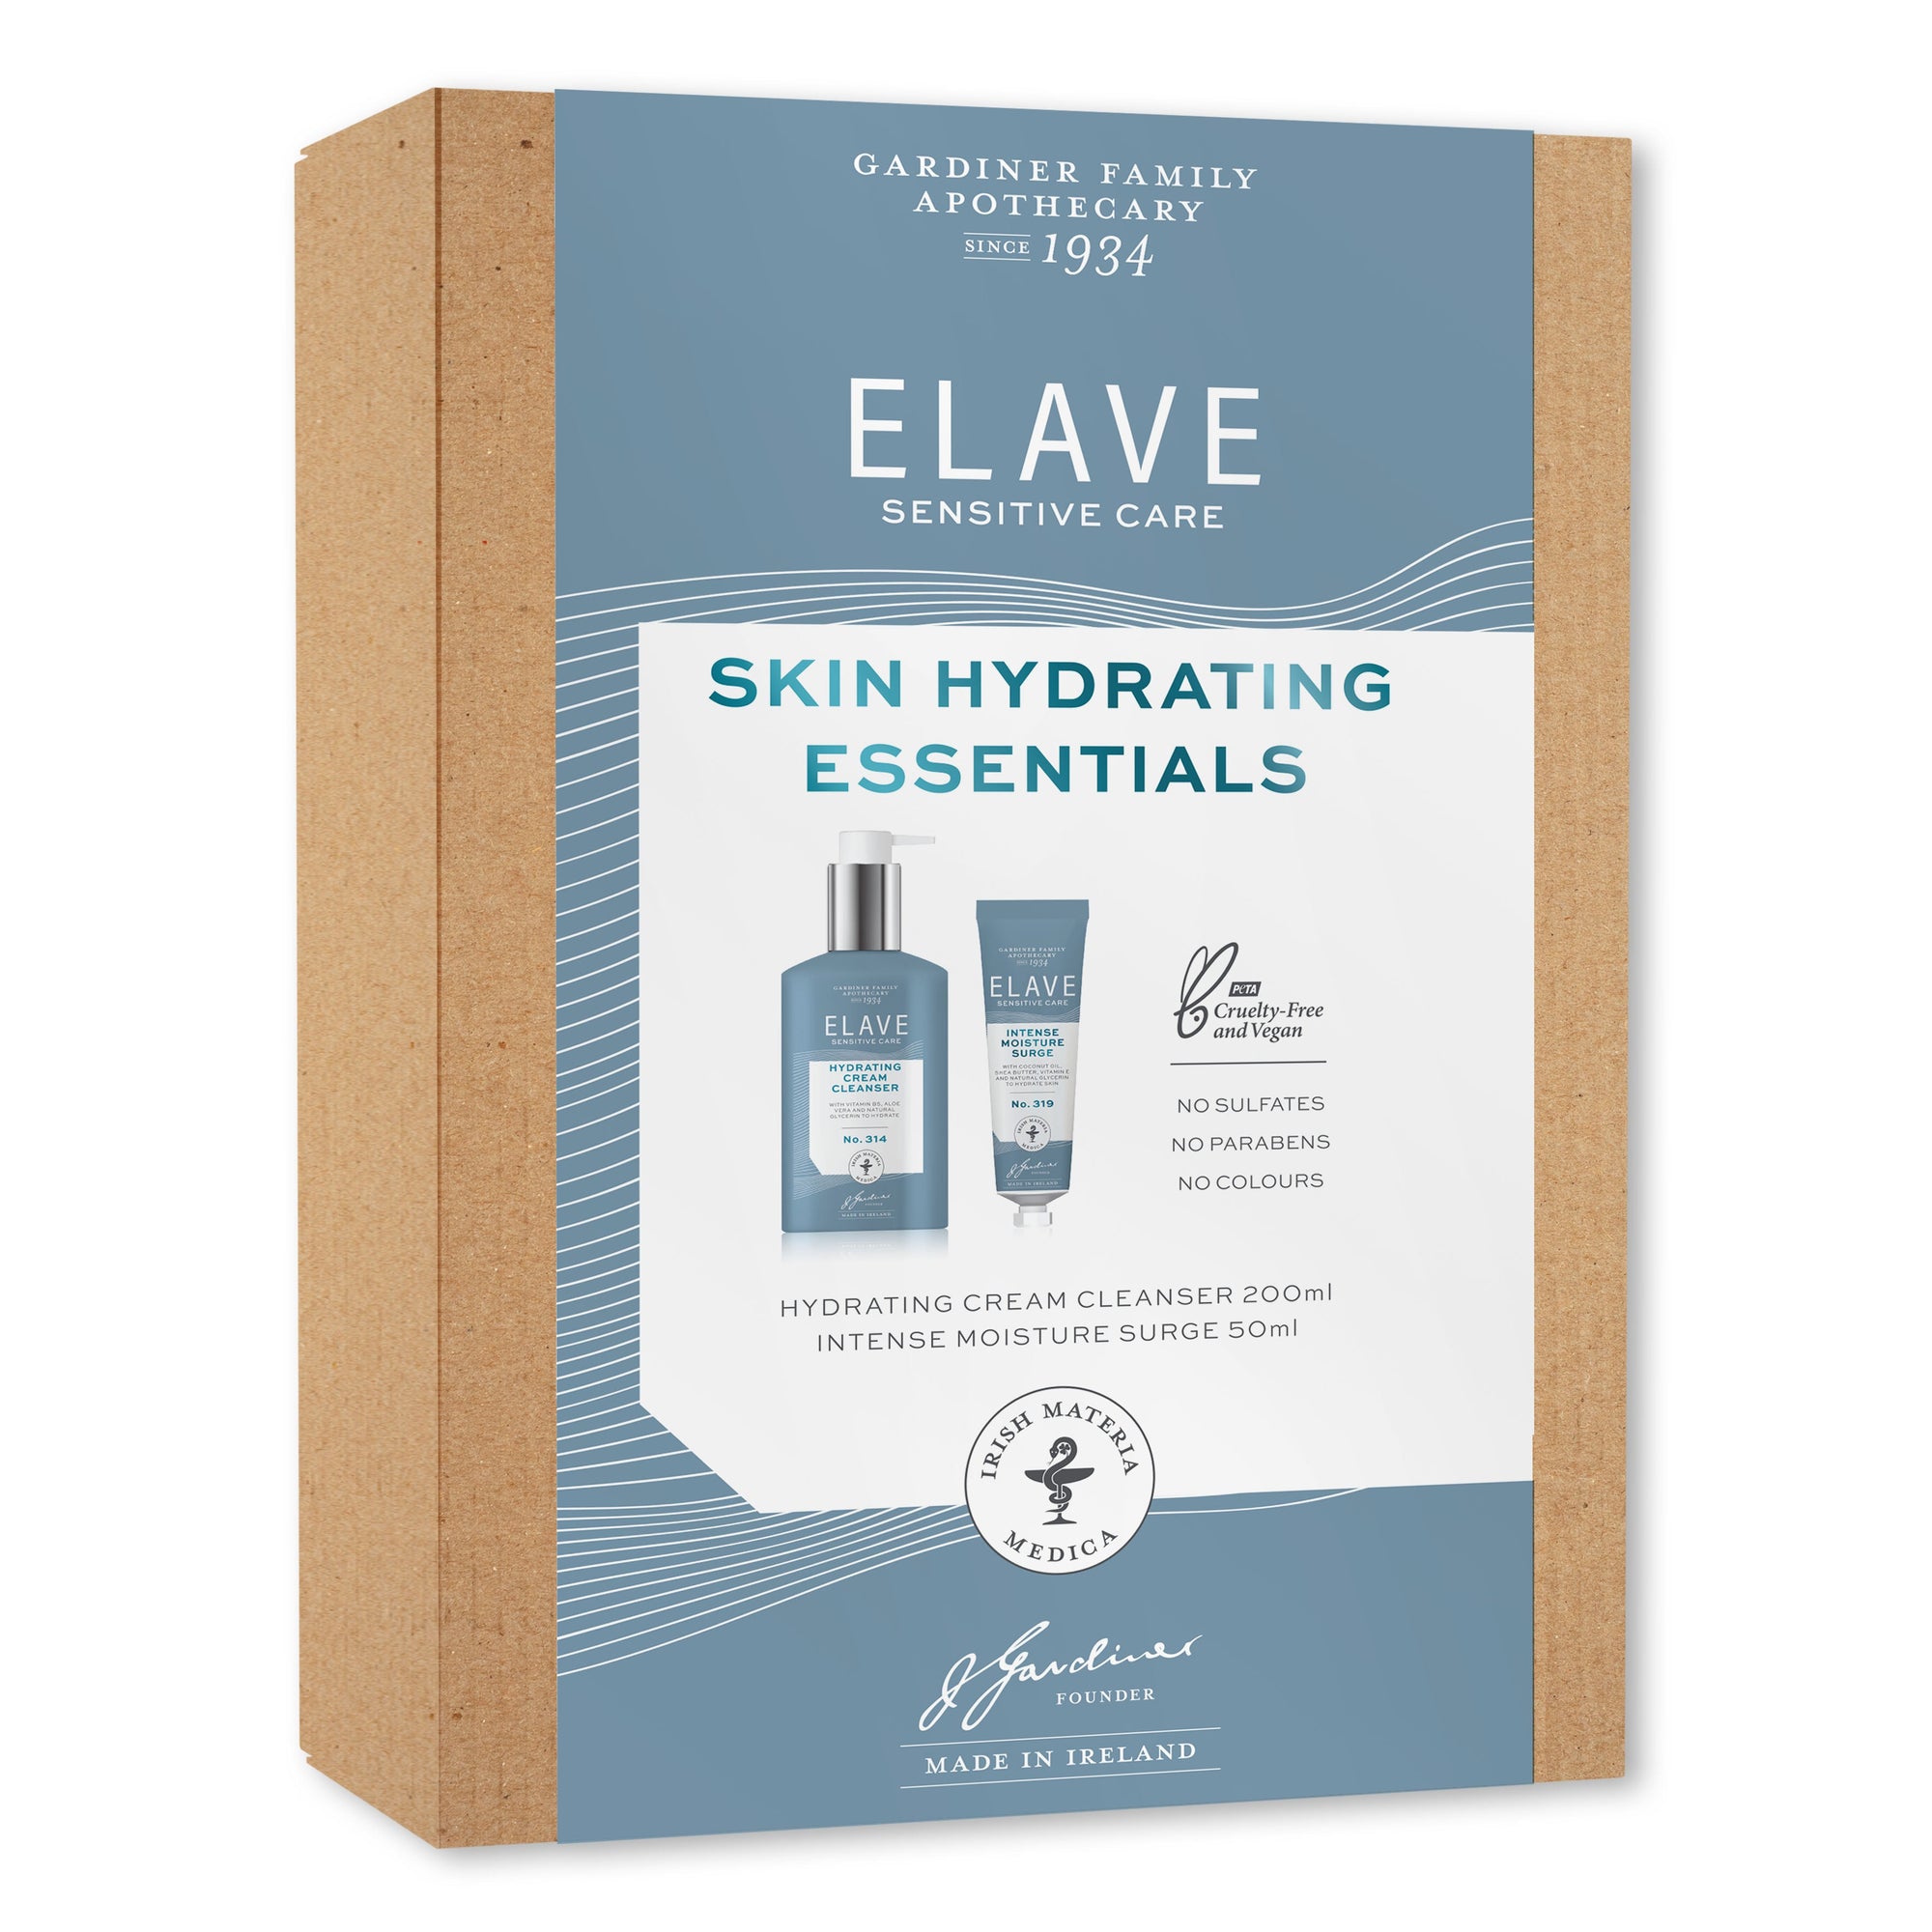 Elave 敏感肌膚保濕套裝 / Elave Skin Hydrating Essentials